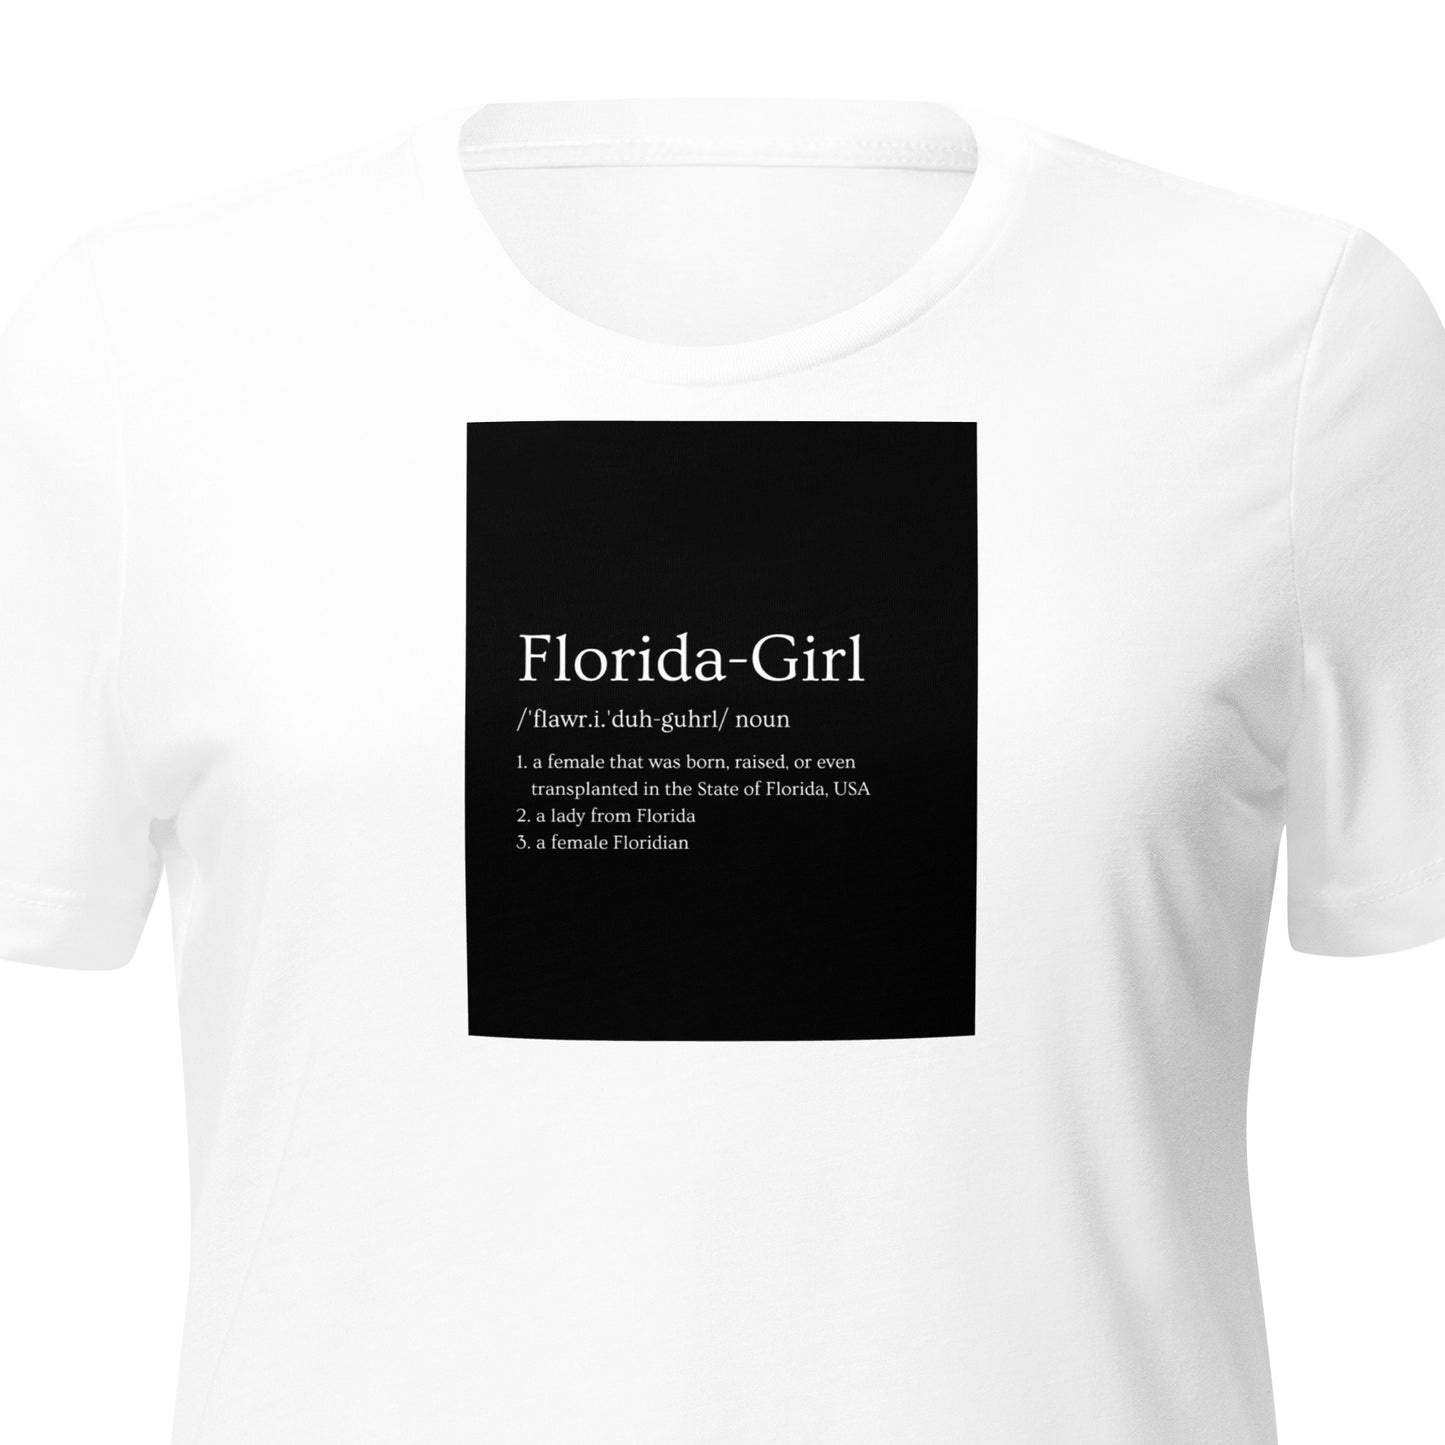 "Florida-Girl definition" Women’s tri-blend Relaxed Shirt